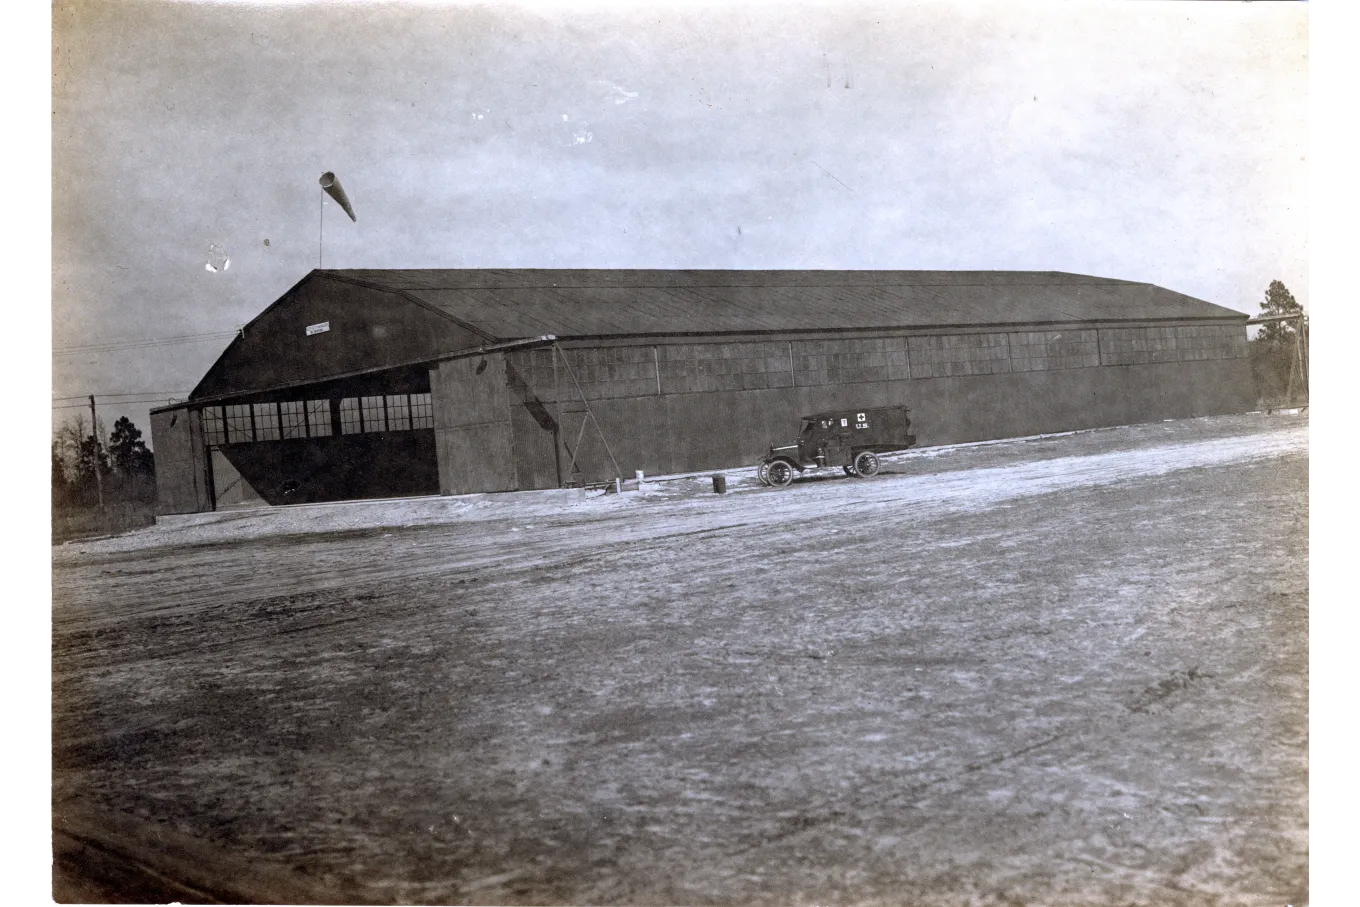 Military aircraft hangar at Camp Bragg 1919